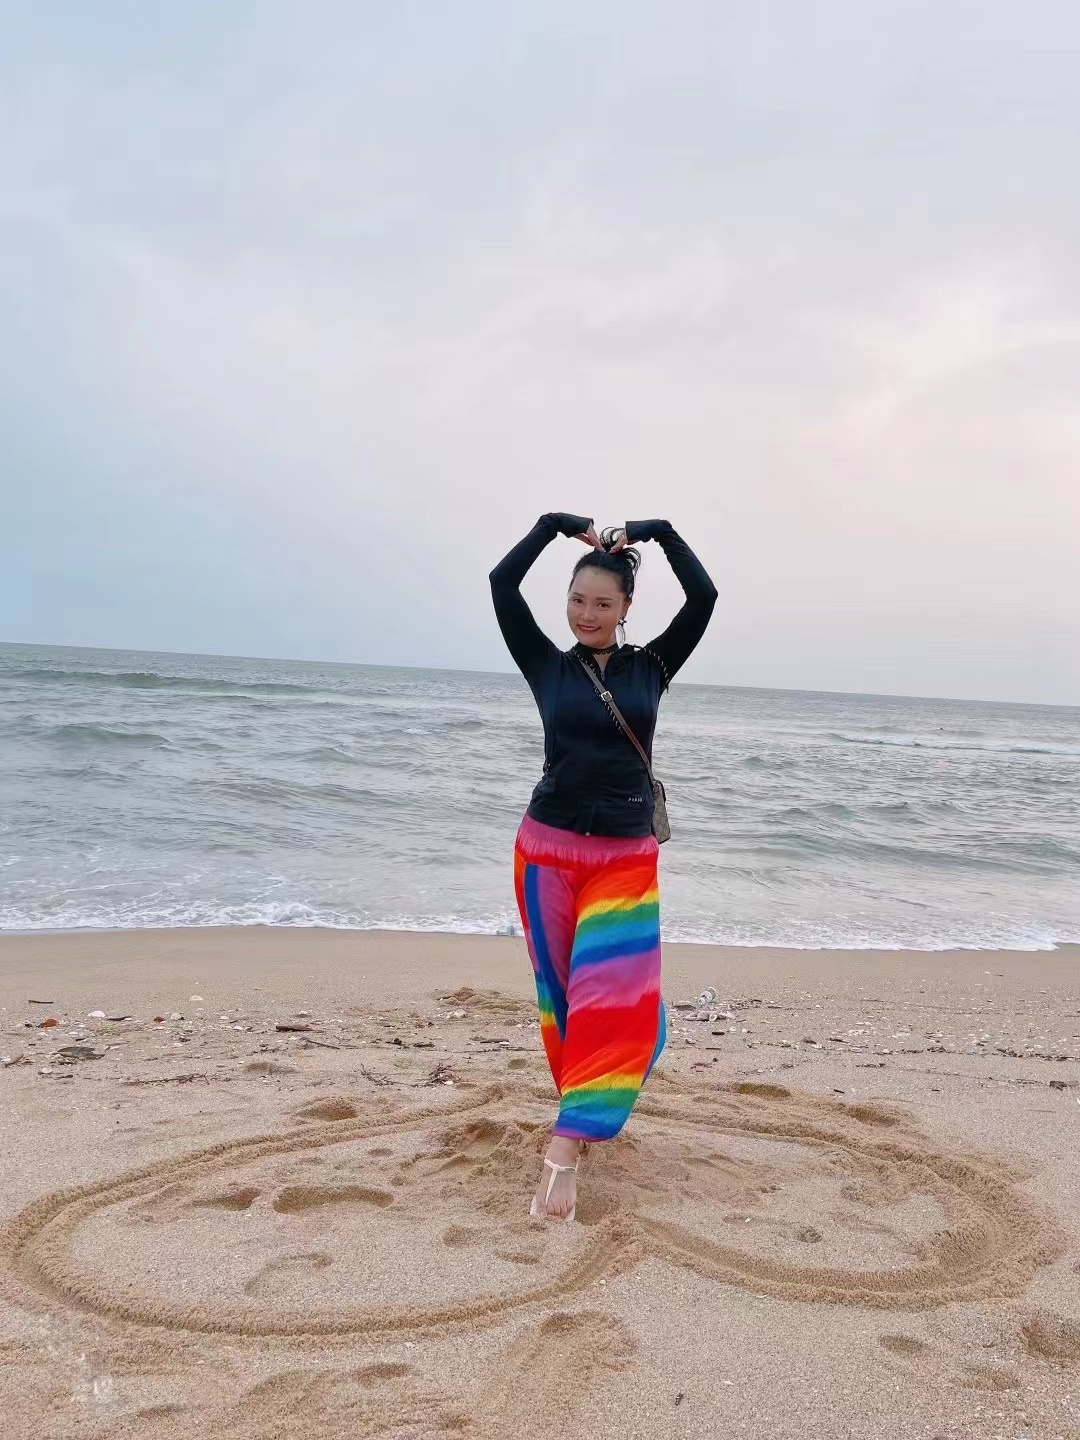 Xiaolin on the beach, sending her love.